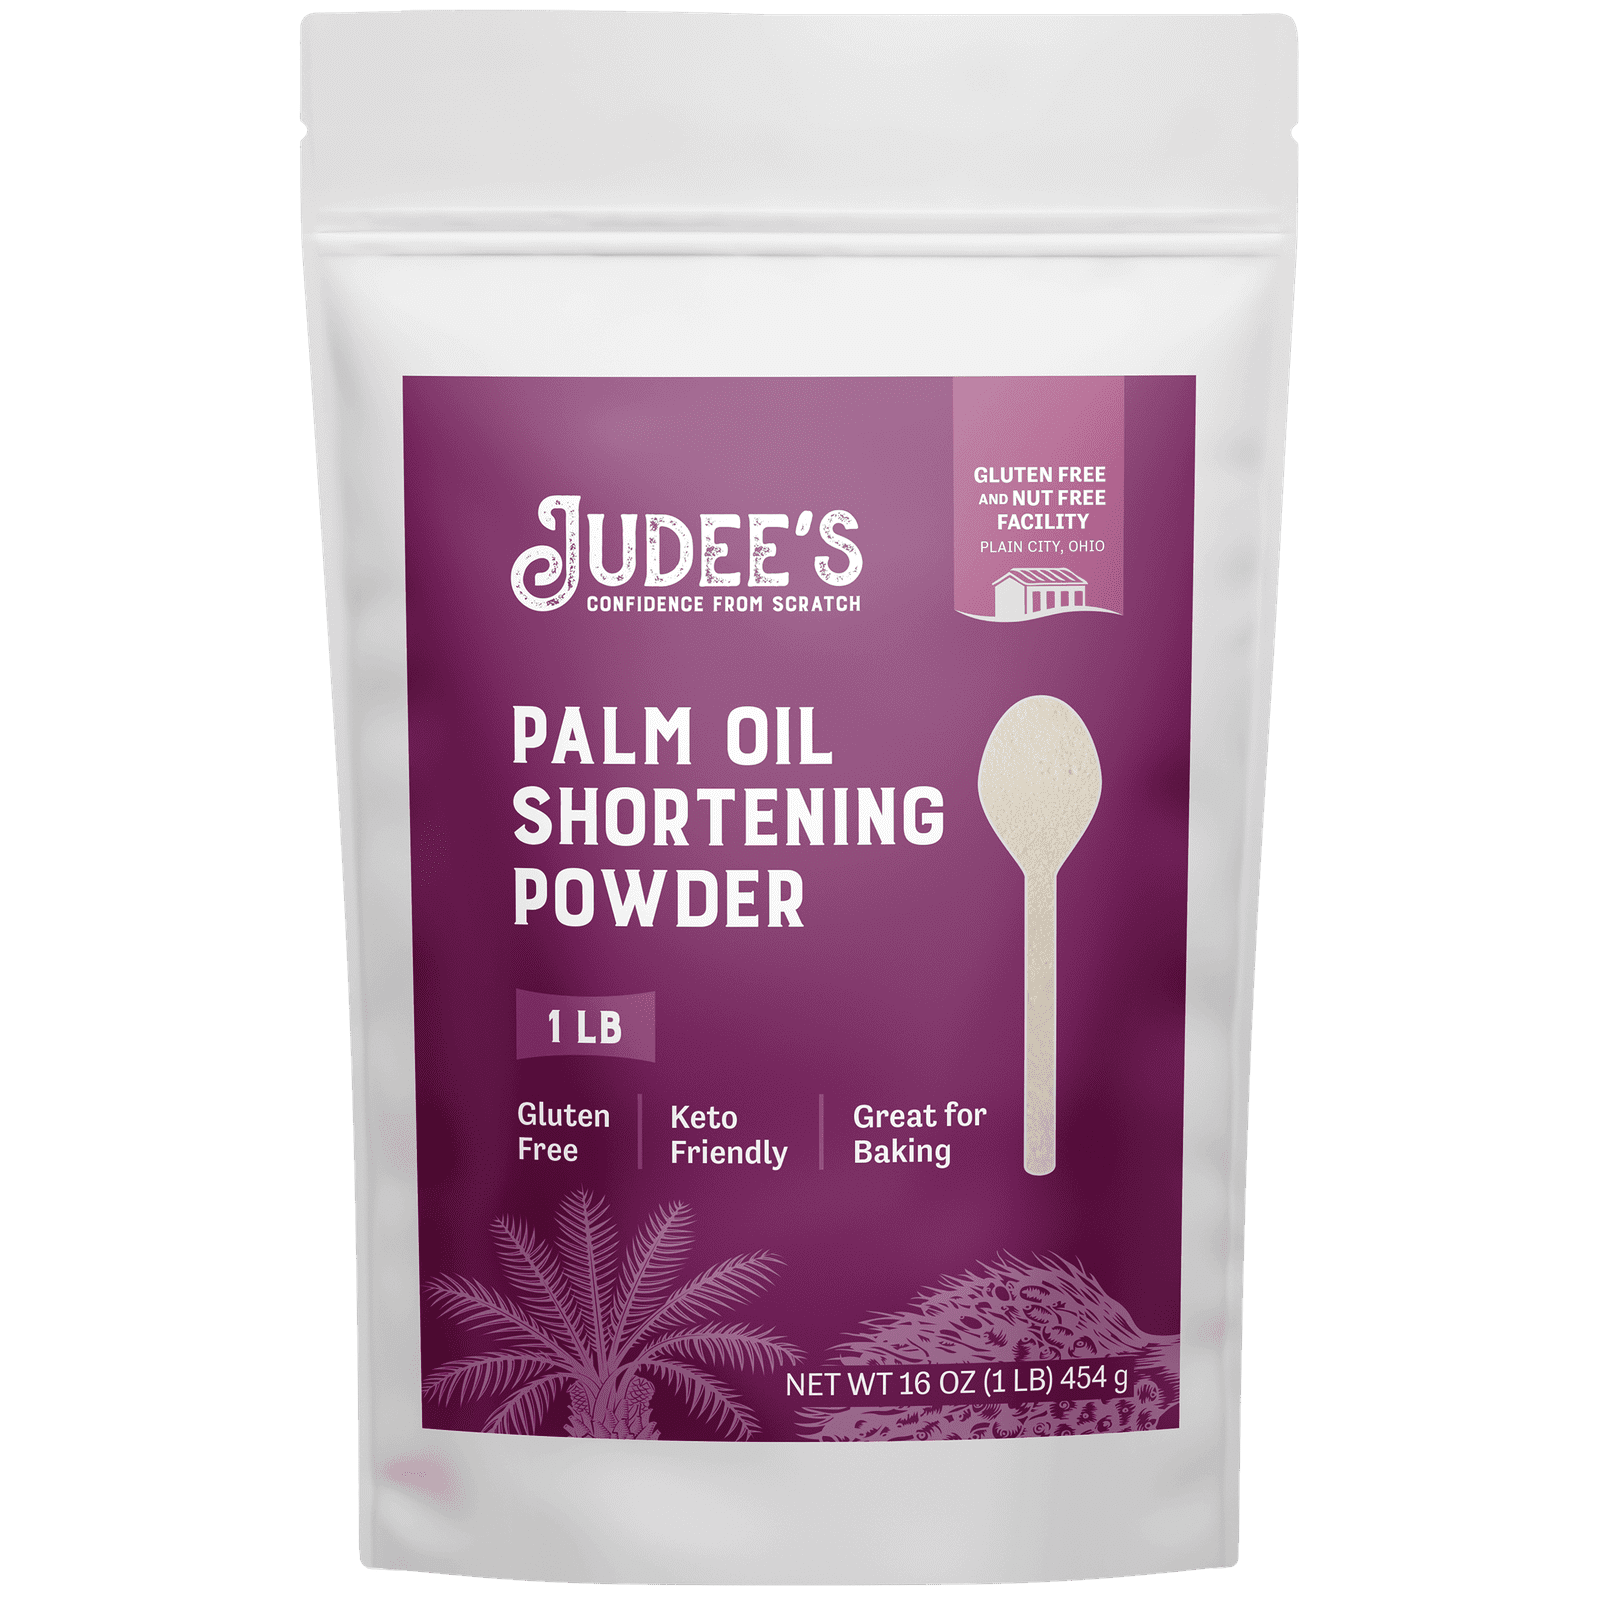 Palm Oil Shortening Powder – Judee's Gluten Free